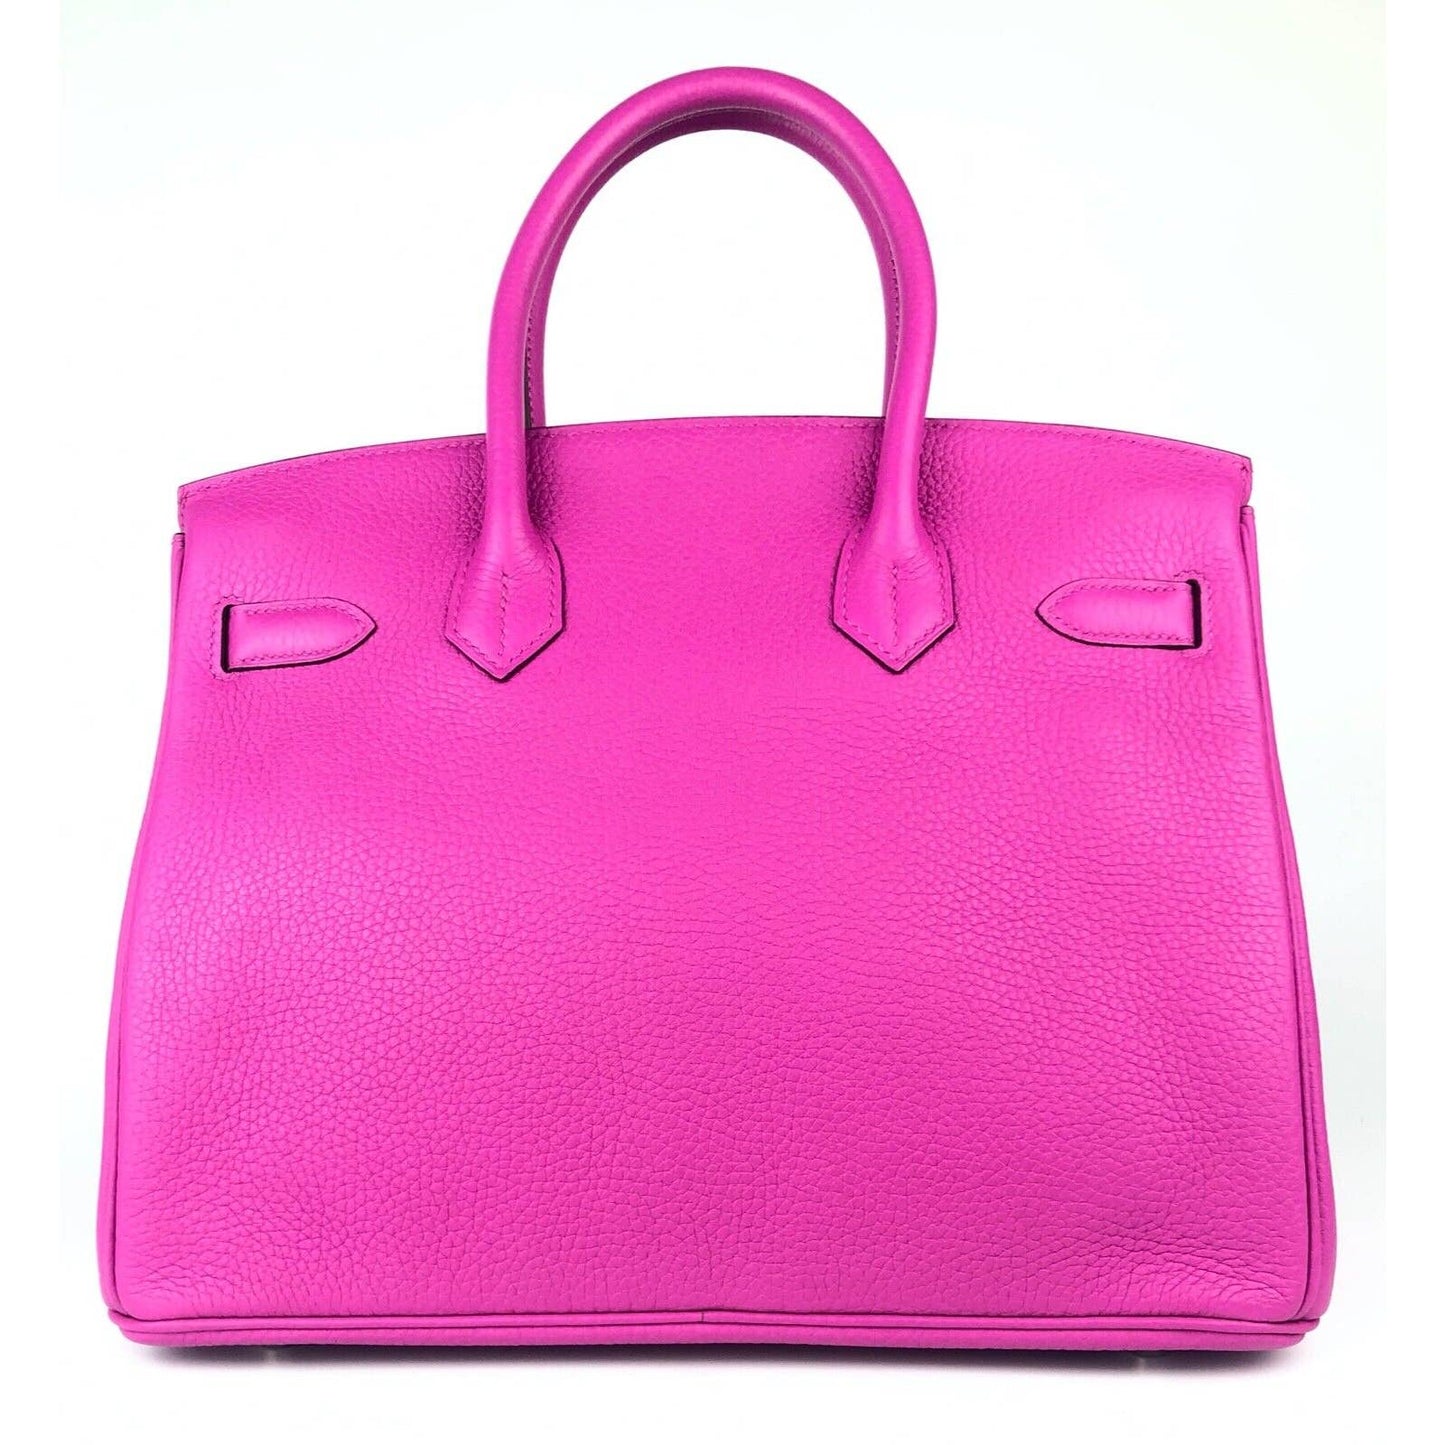 Hermes Birkin 30 Magnolia Pink Purple Leather Bag Handbag Palladium Hardware